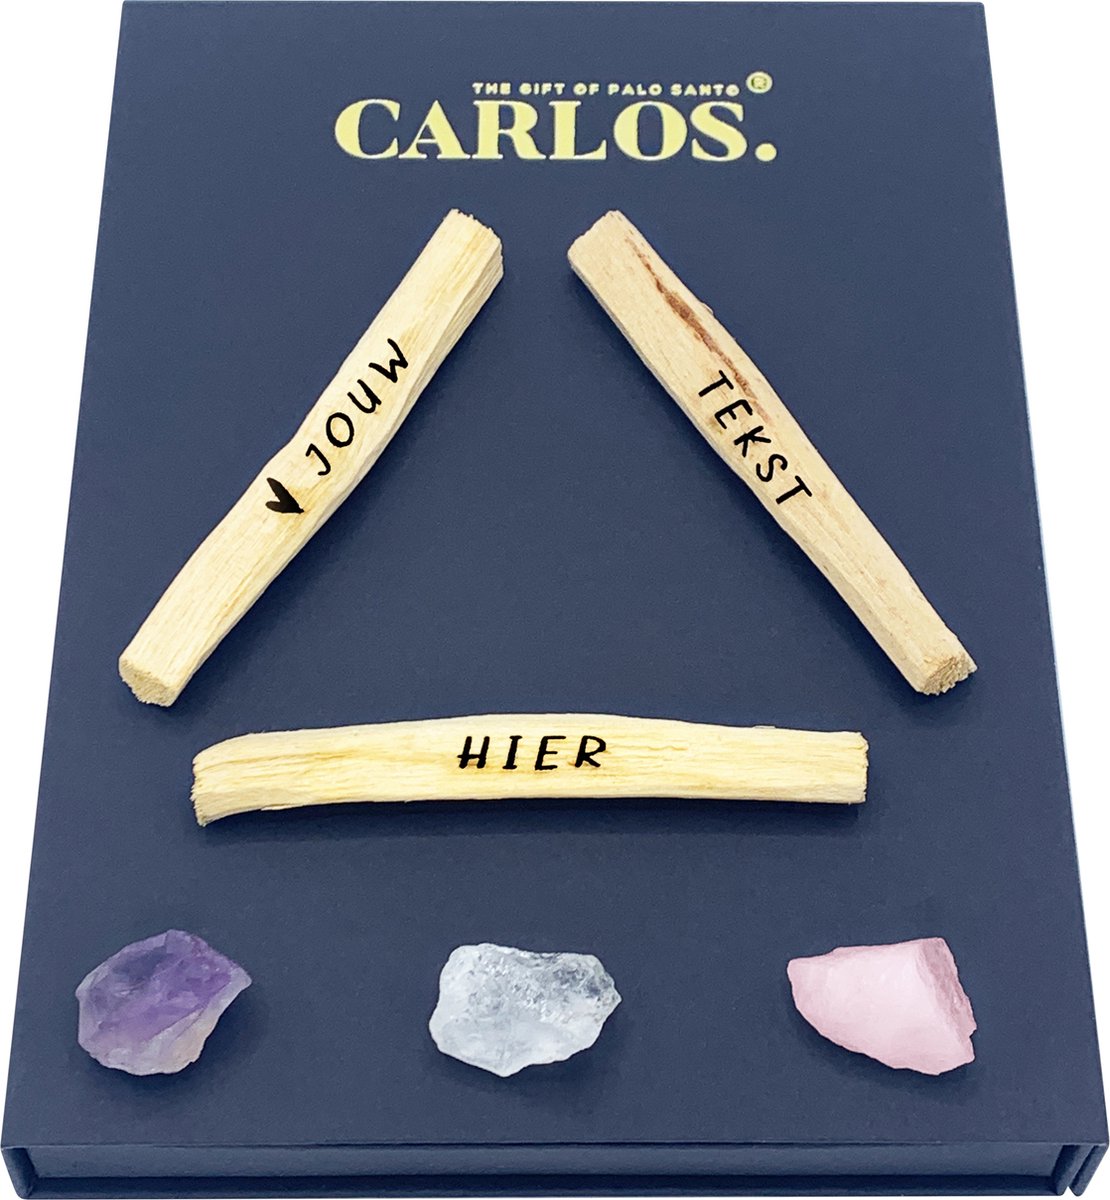 JOUW TEKST HIER gepersonaliseerde luxe giftset PALO SANTO met gegraveerde boodschap + 3 edelstenen: amethist, bergkristal, rozenkwarts. Bepaal je eigen tekst op de Palo Santo stokjes.